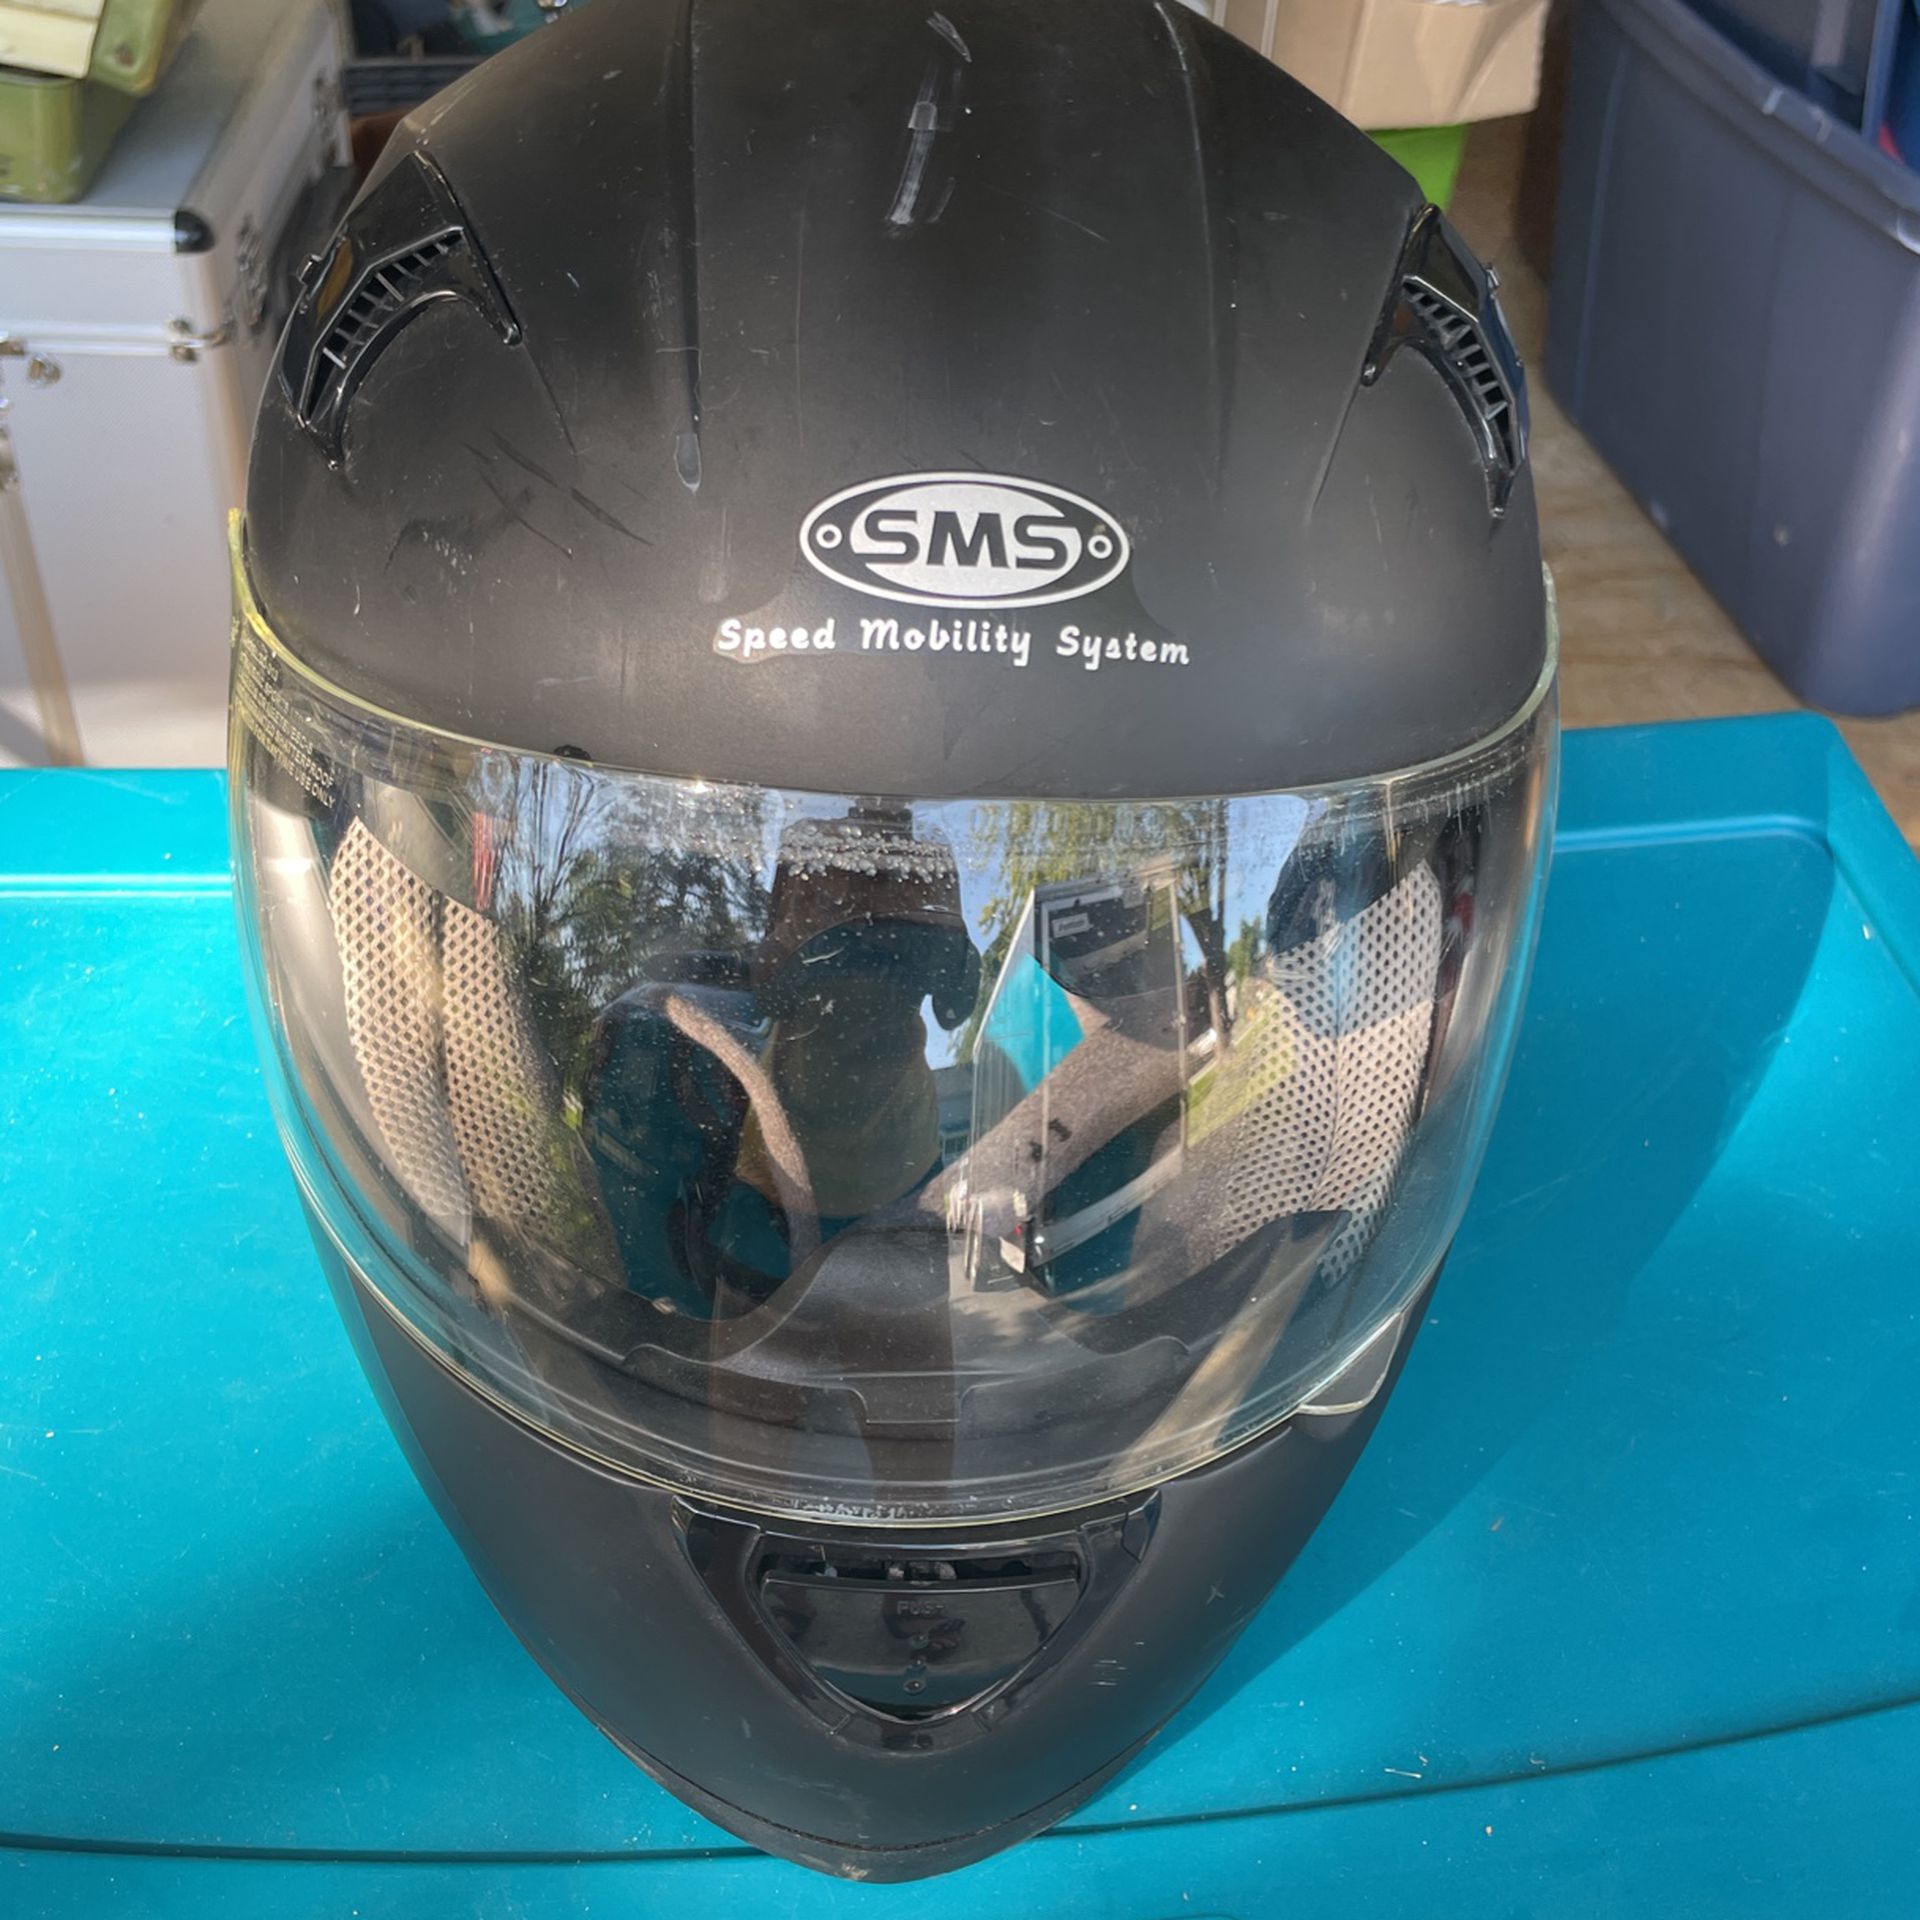 Motorcycle Helmet Large 